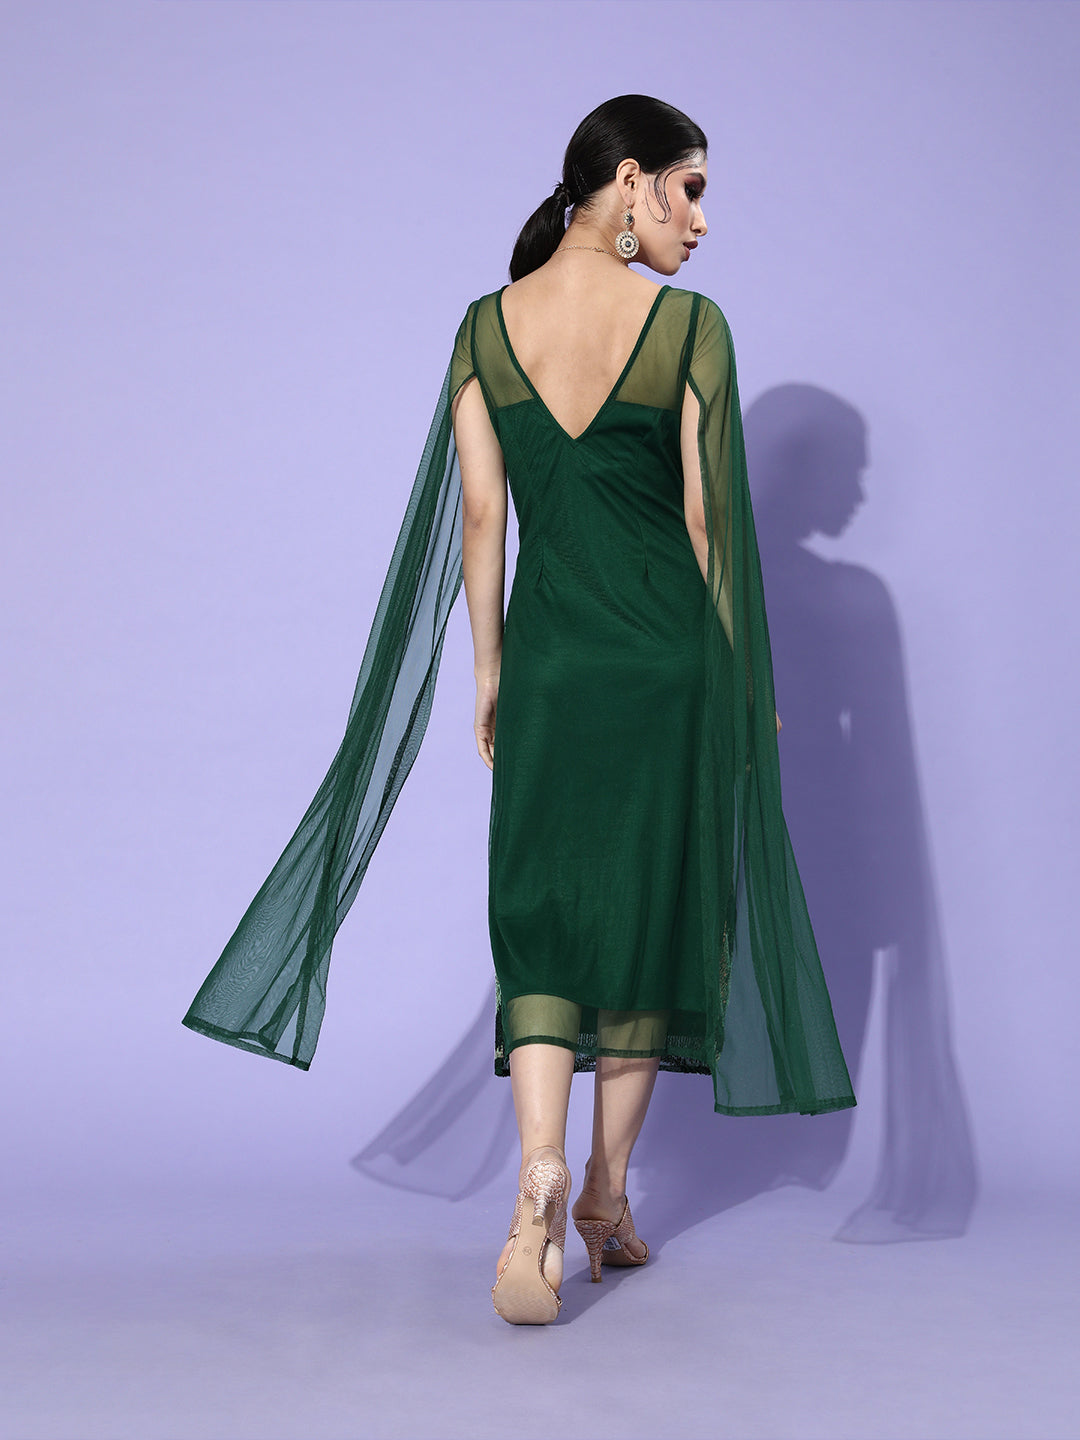 Athena Green Embellished Sheath Midi Dress - Athena Lifestyle